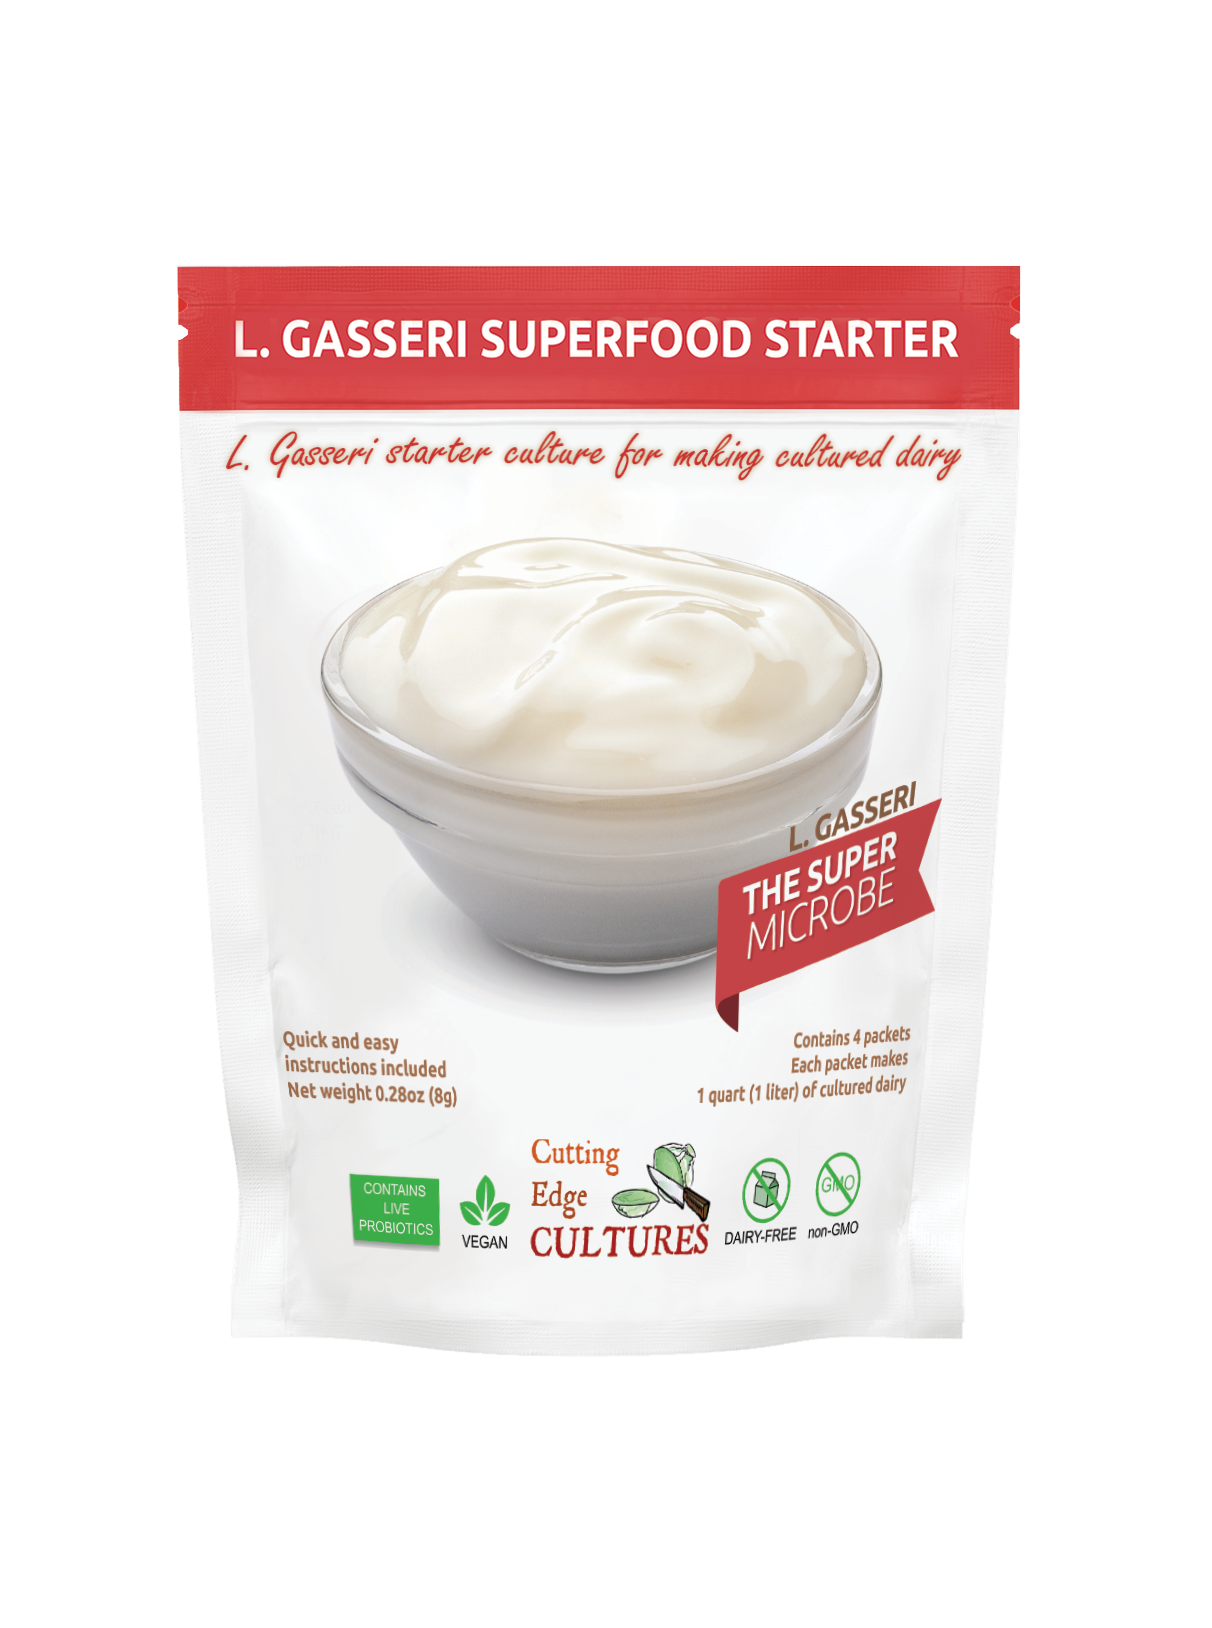 L. Gasseri Superfood